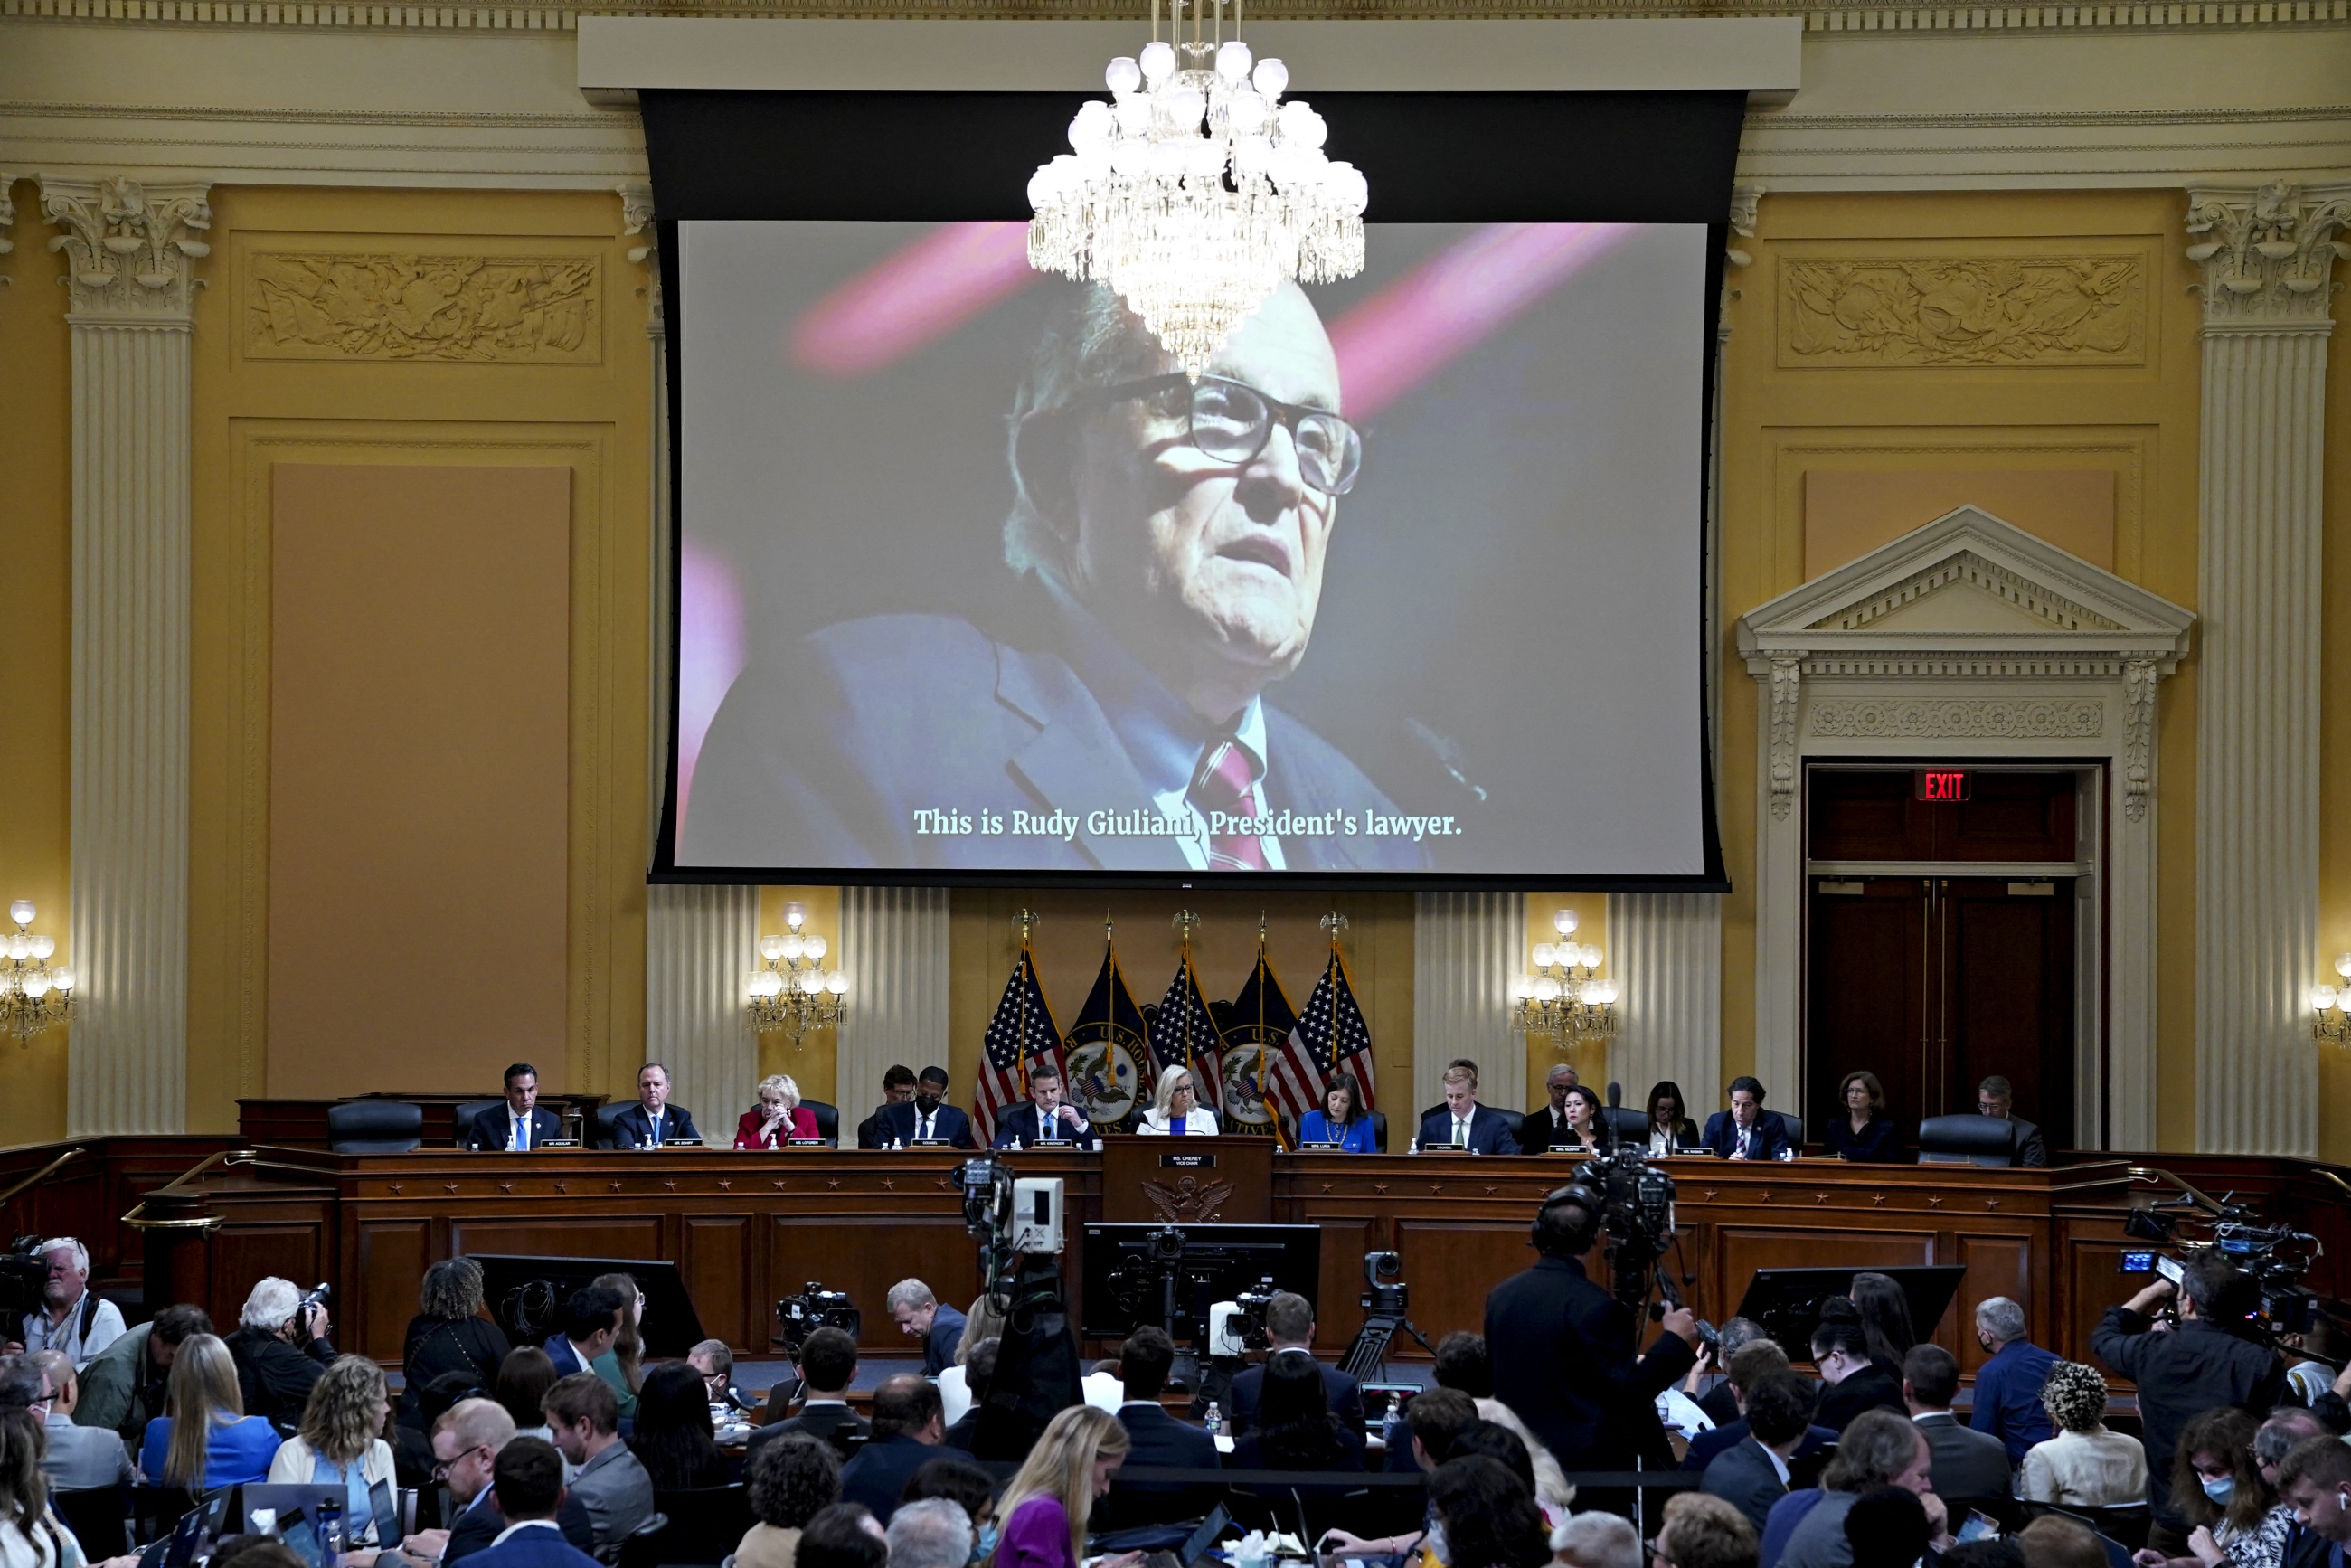 La photo de Rudy Giuliani, ex-avocat de Donald Trump, projetée lors d’une audition de la Commission d’enquête sur l’attaque du 6 janvier contre le Capitole américain à Washington D.C., le 21 juillet 2022 (AFP)